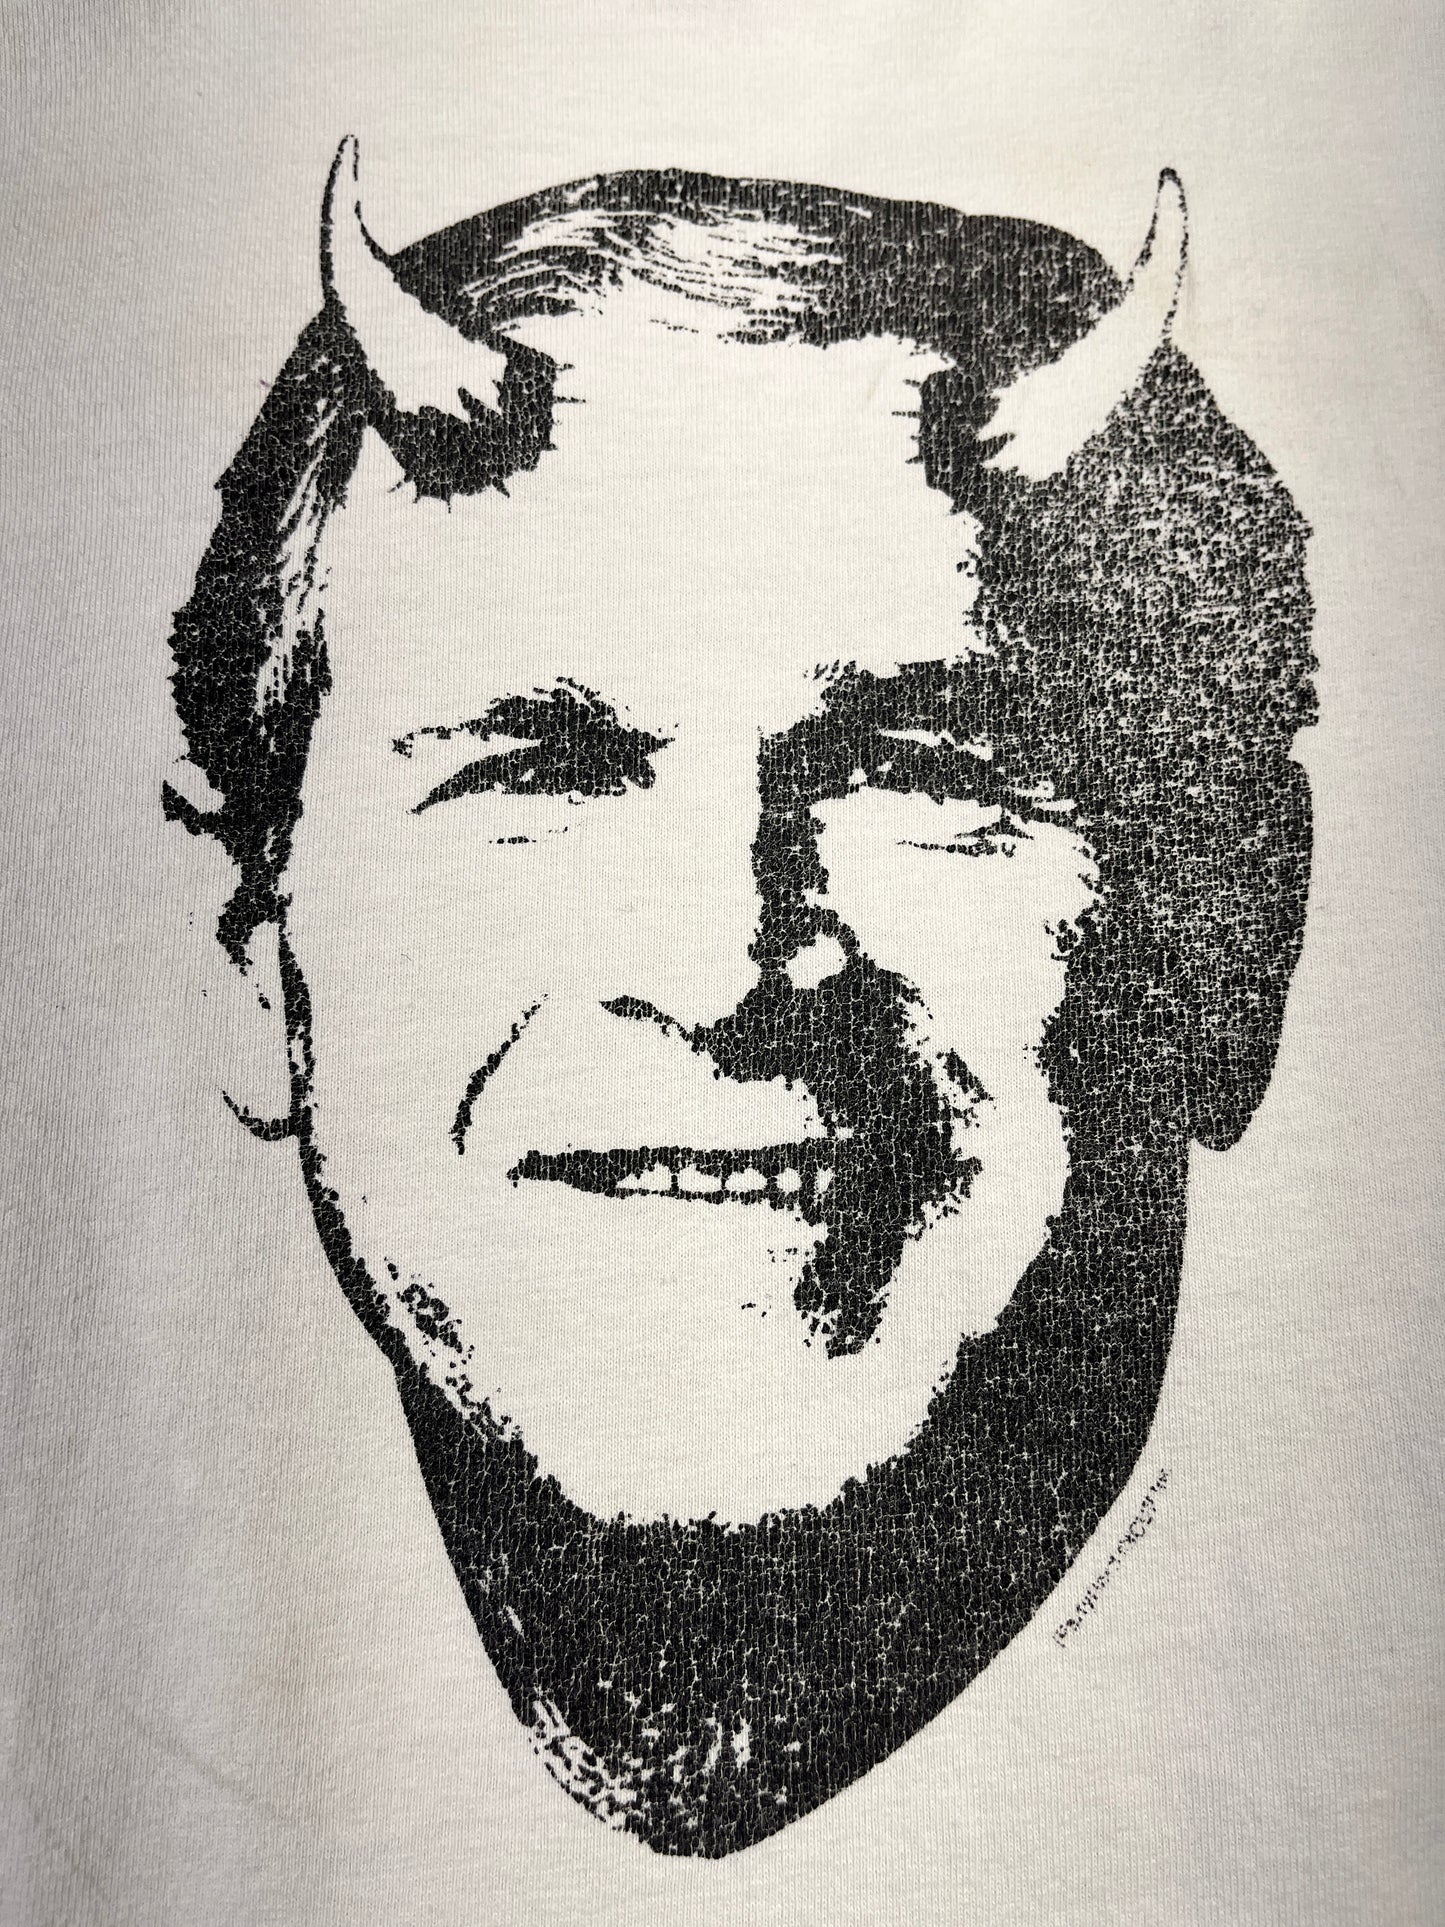 Vintage George Bush T-Shirt Evil Horns USA President Y2K Devil